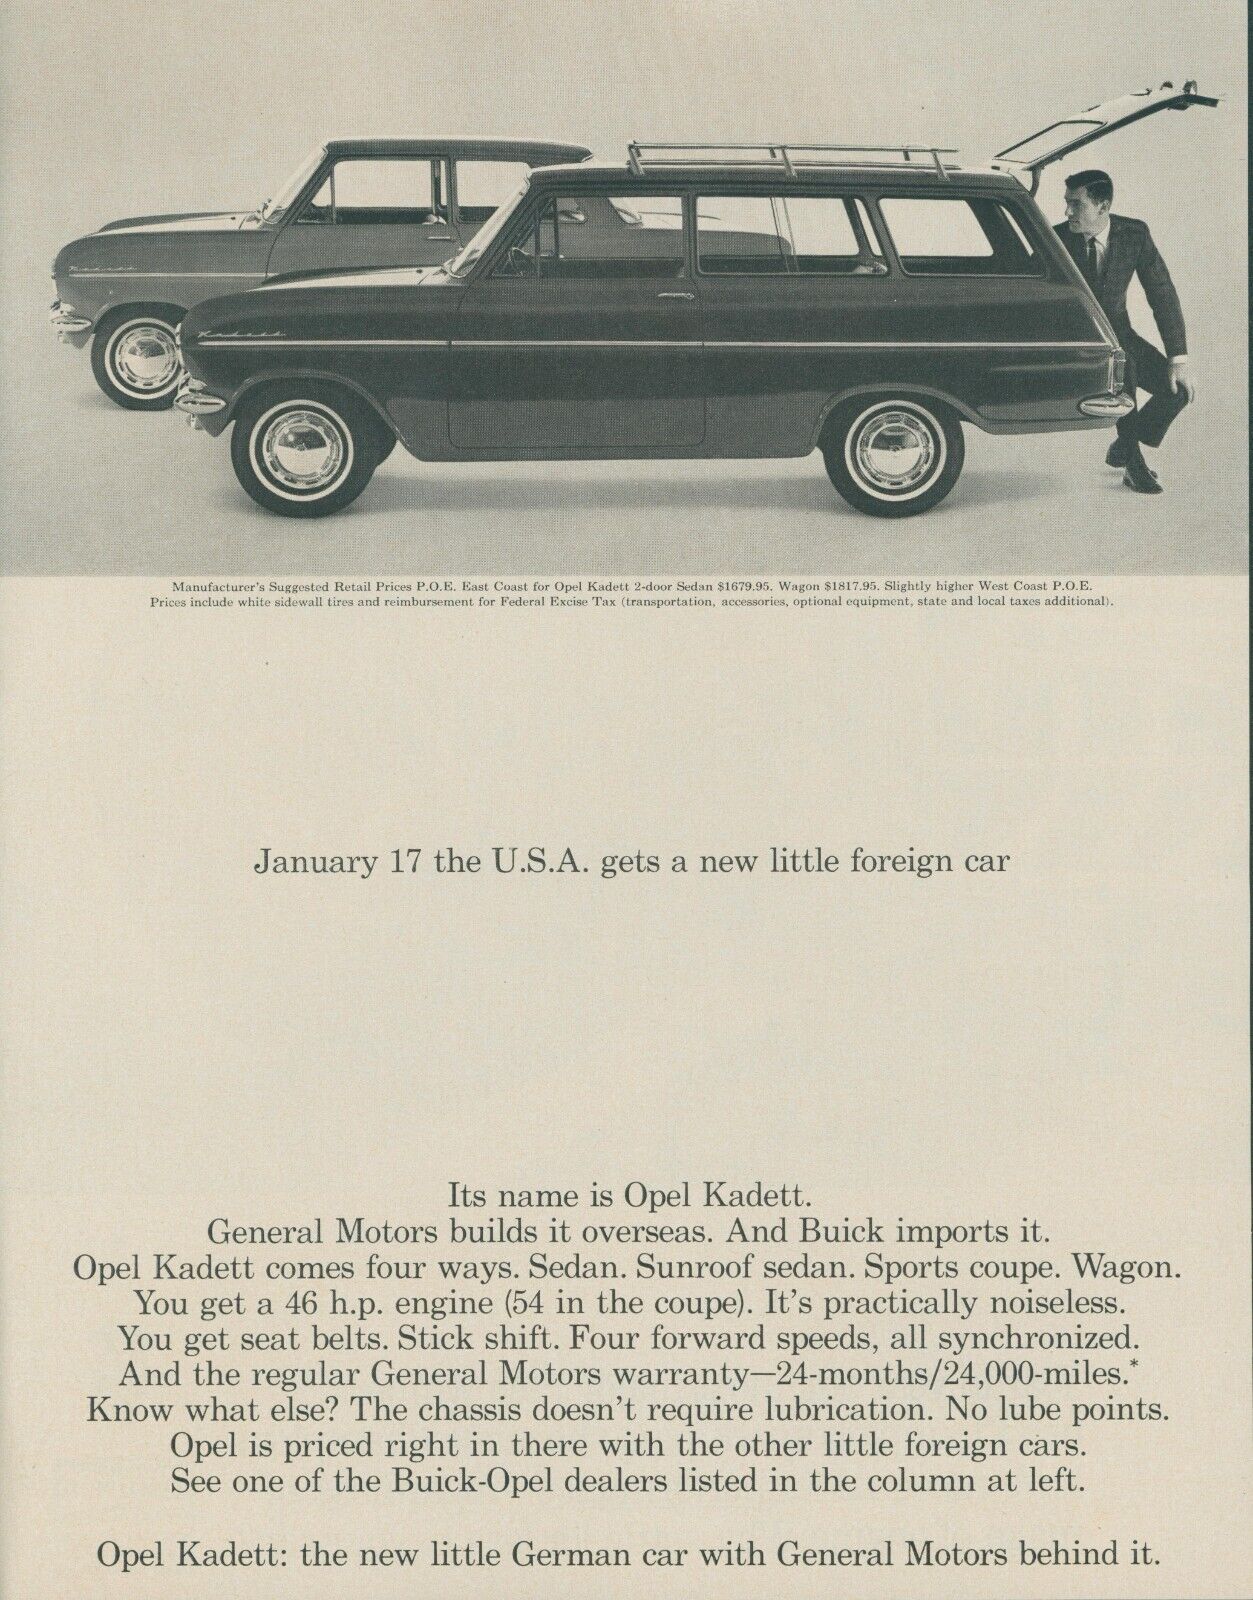 1964 Opel Kadett German Car With General Motors Behind It Vintage Print Ad LO3